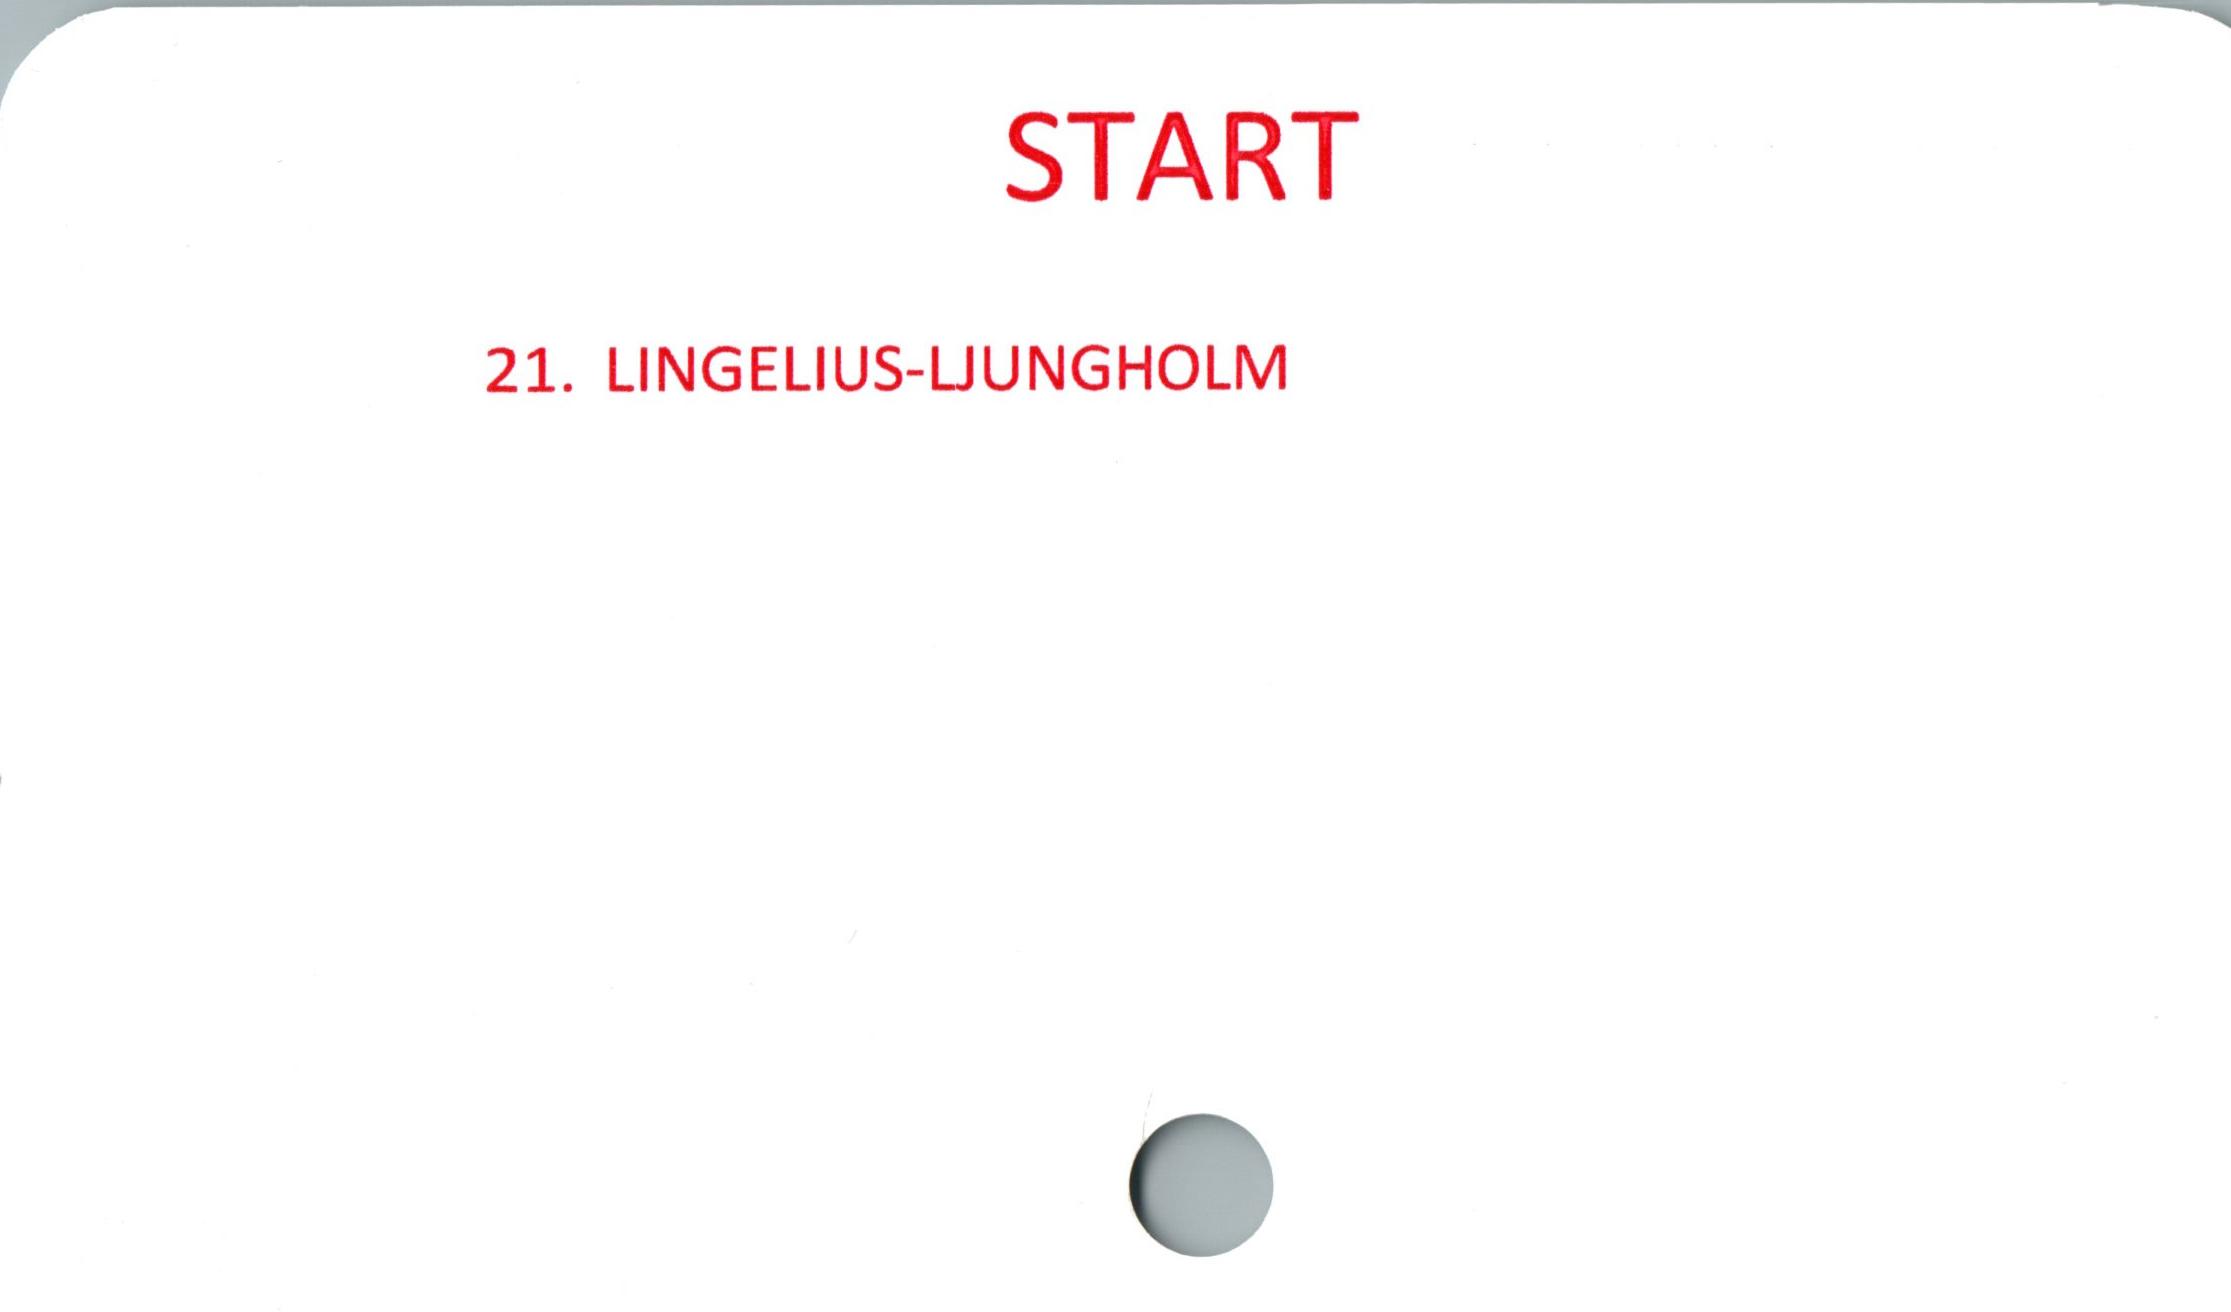 LINGELIUS-LJUNGHOLM ﻿START

21. LINGELIUS-LJUNGHOLM